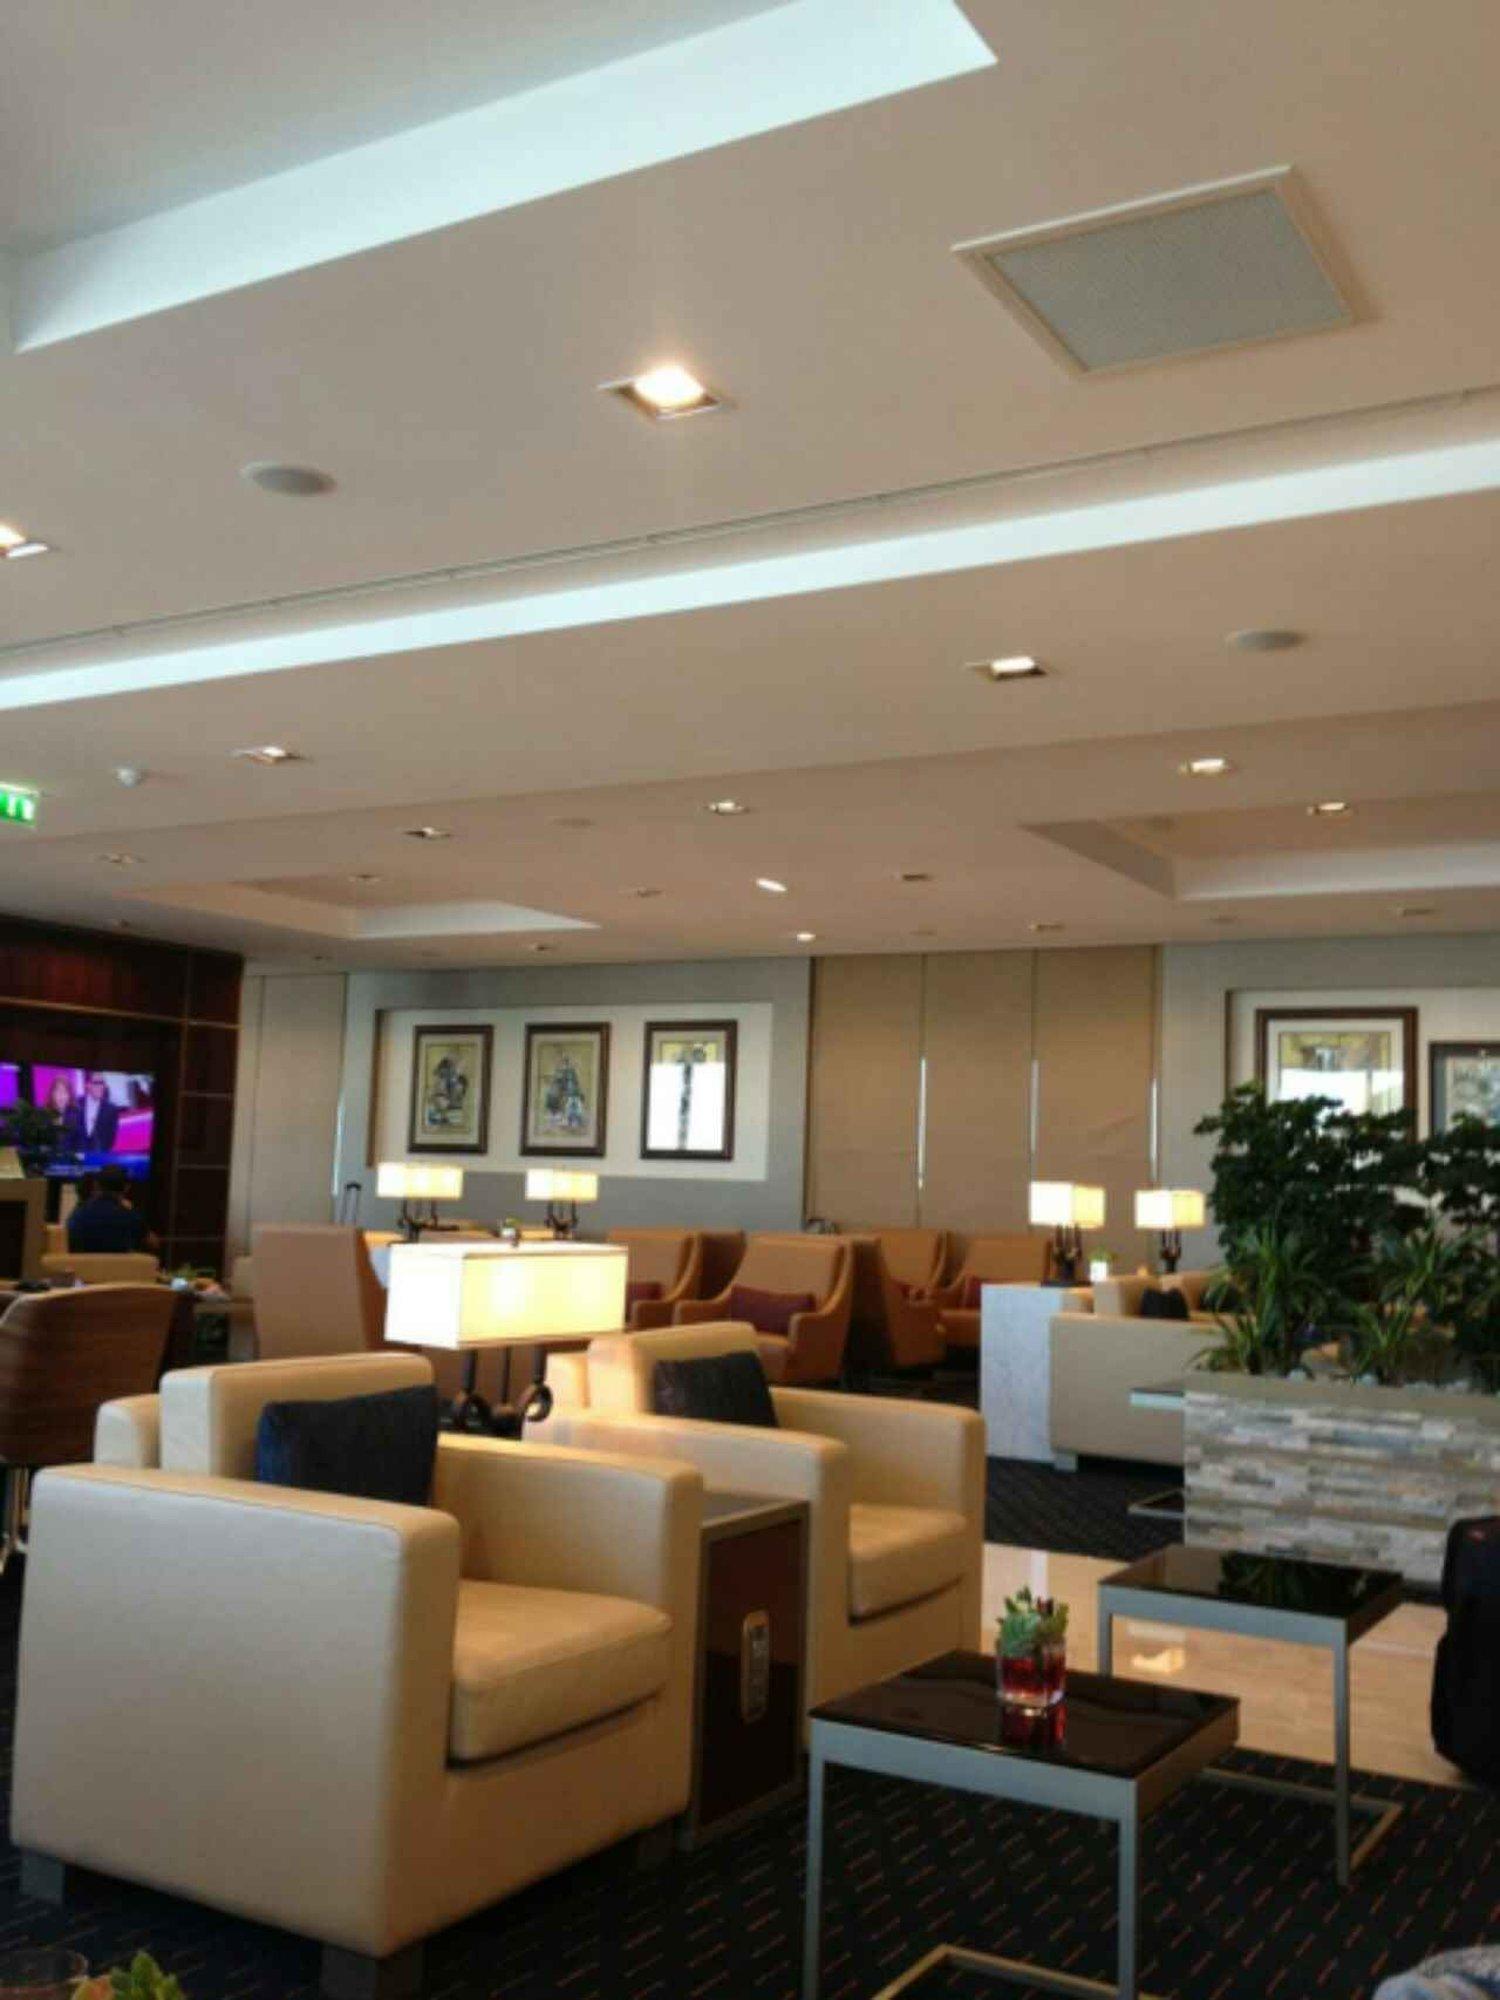 The Emirates Lounge image 2 of 9